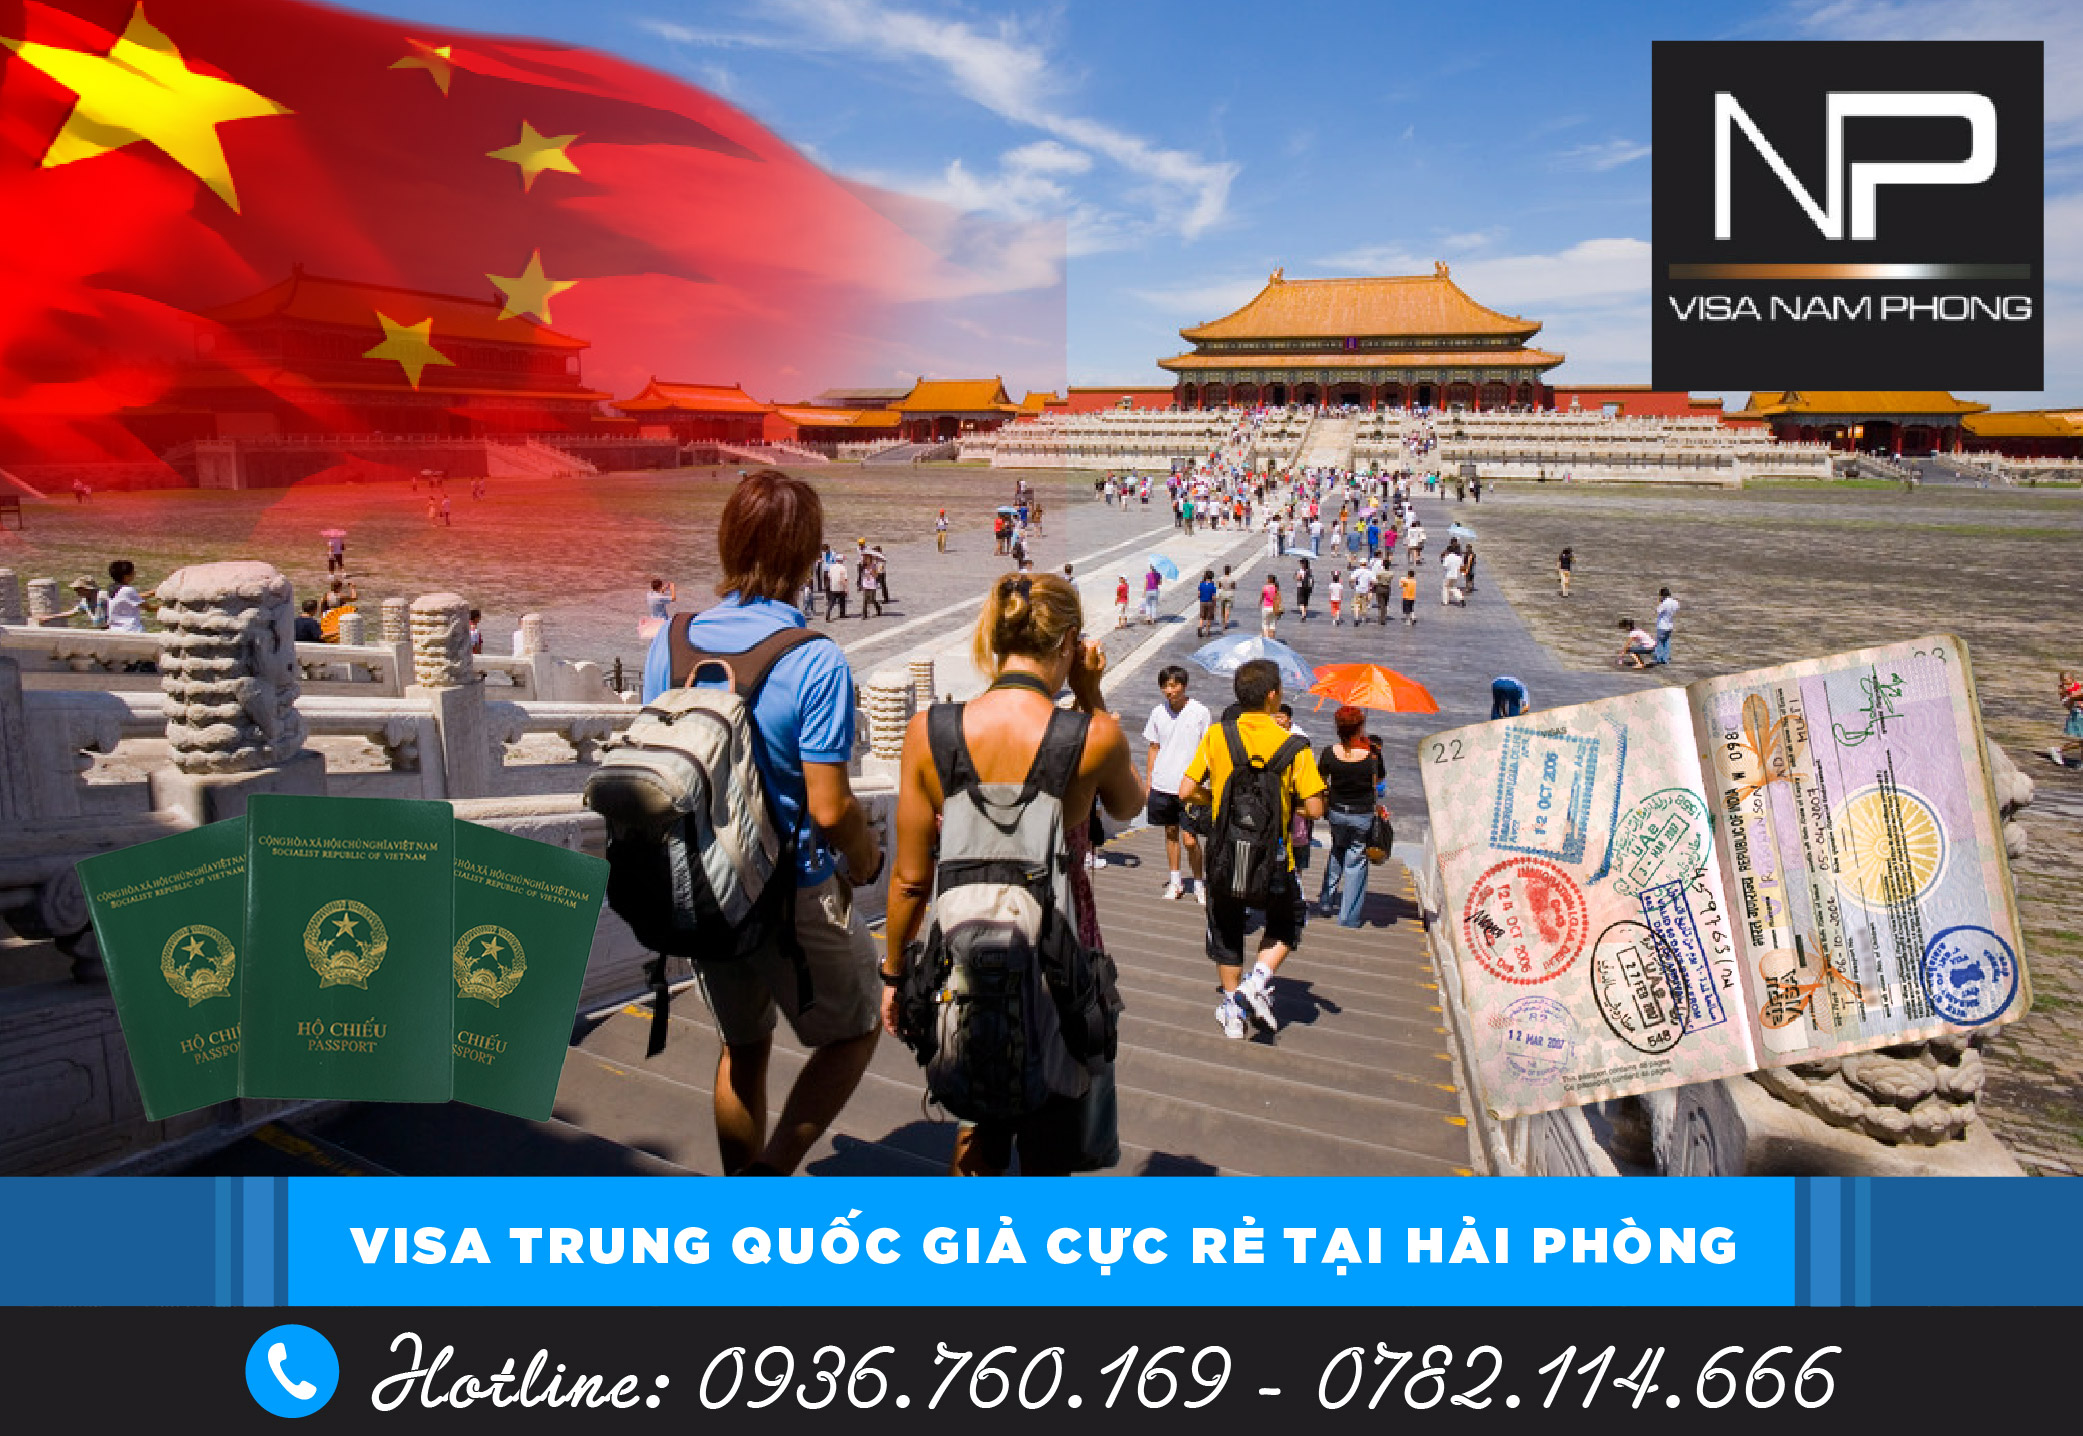 Visa Trung Quốc giả cực rẻ tại Hải Phòng